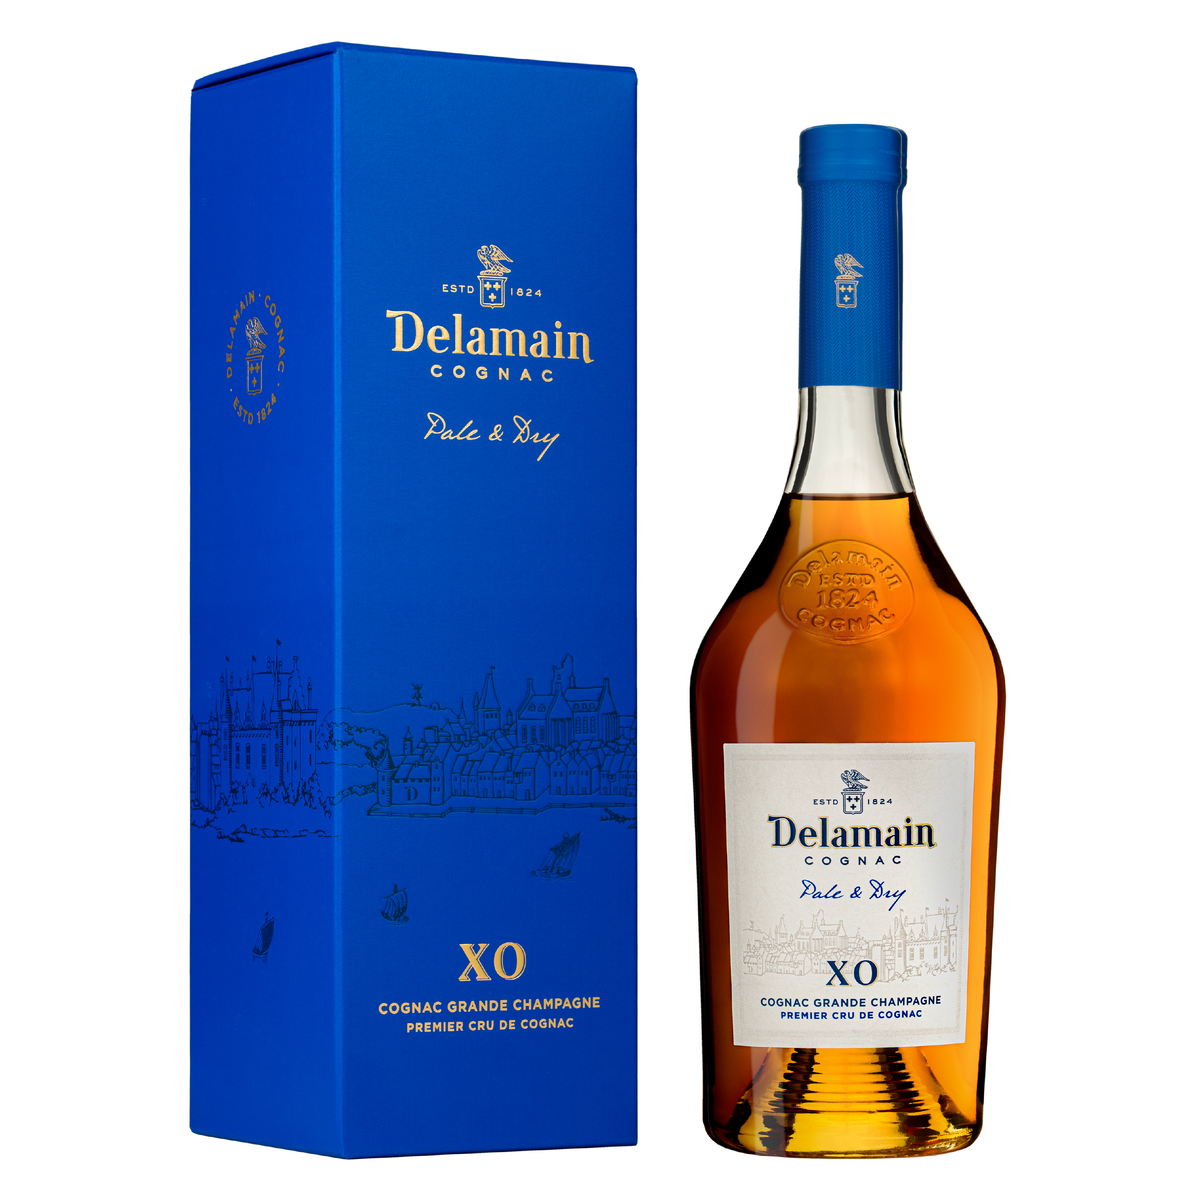 DELAMAIN Cognac &quot;Pale &amp; Dry XO&quot; - 150cl with Gift Box